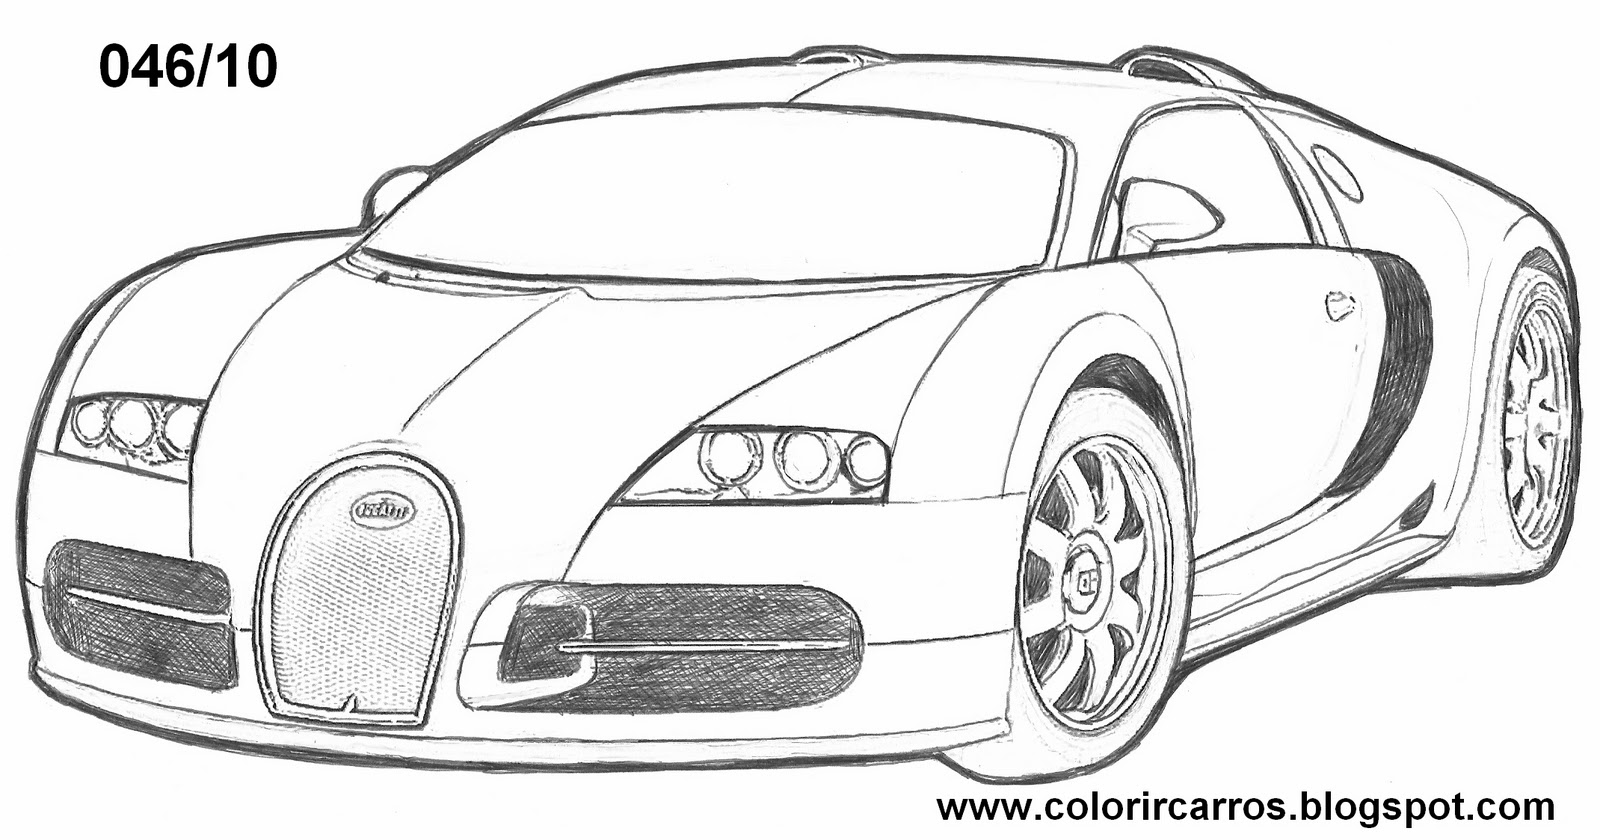 dibujos de carros: dibujos de carros